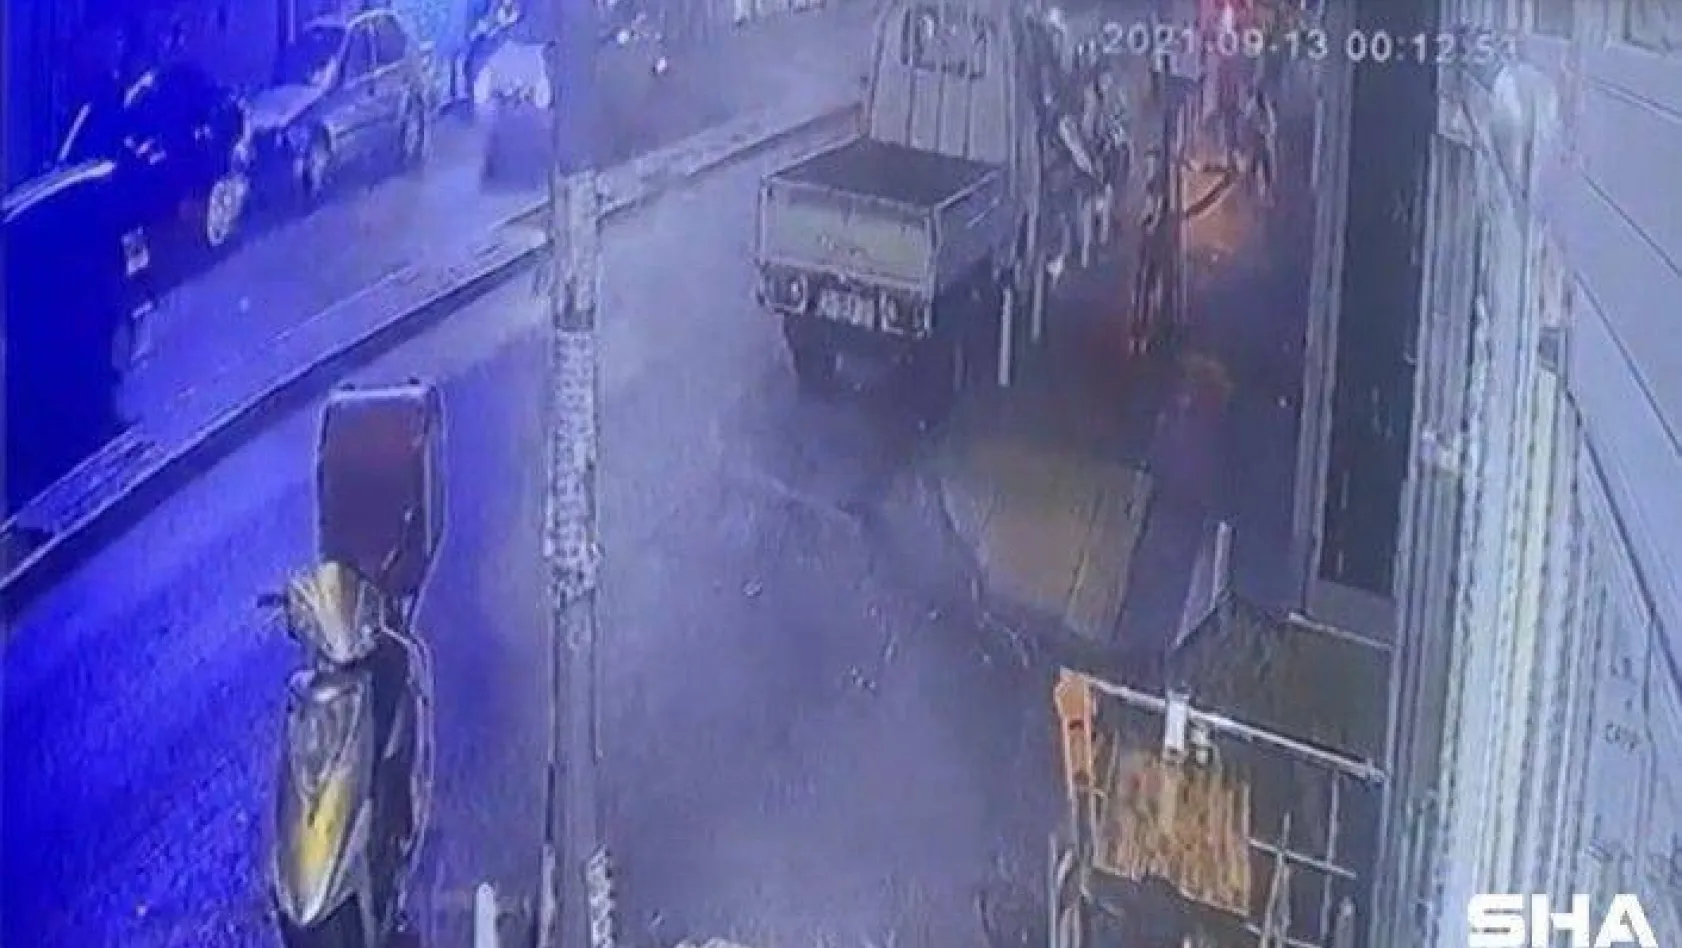 (Özel) İstanbul'da 'omuz atma' cinayeti kamerada: Kalbinden bıçaklandı, can havliyle böyle koştu